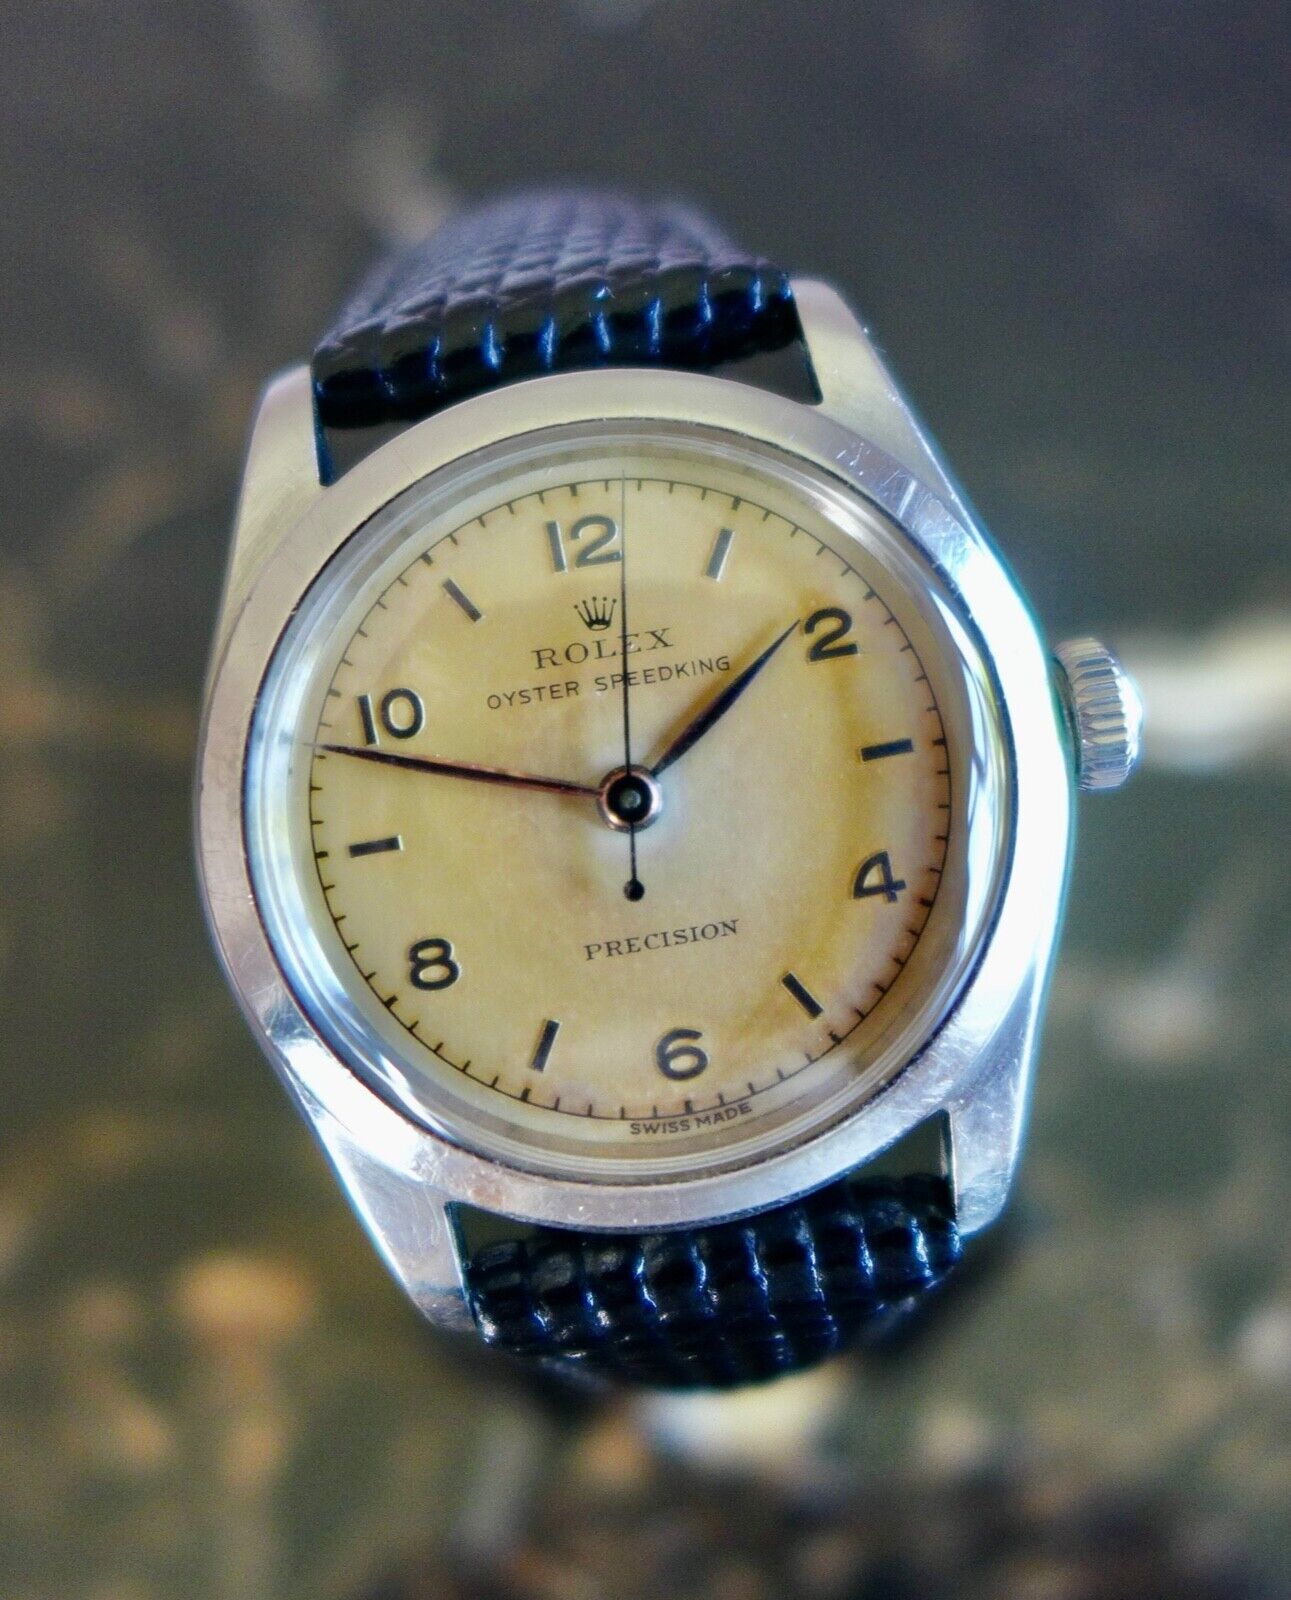 ヴィンテージ ロレックス プレシジョン腕時計 オイスター スピードキング ref. 4220 1946年 – ヴィンテージウォッチ専門店『ヴィンテージ ・ウォッチライフ/Vintage watch life』